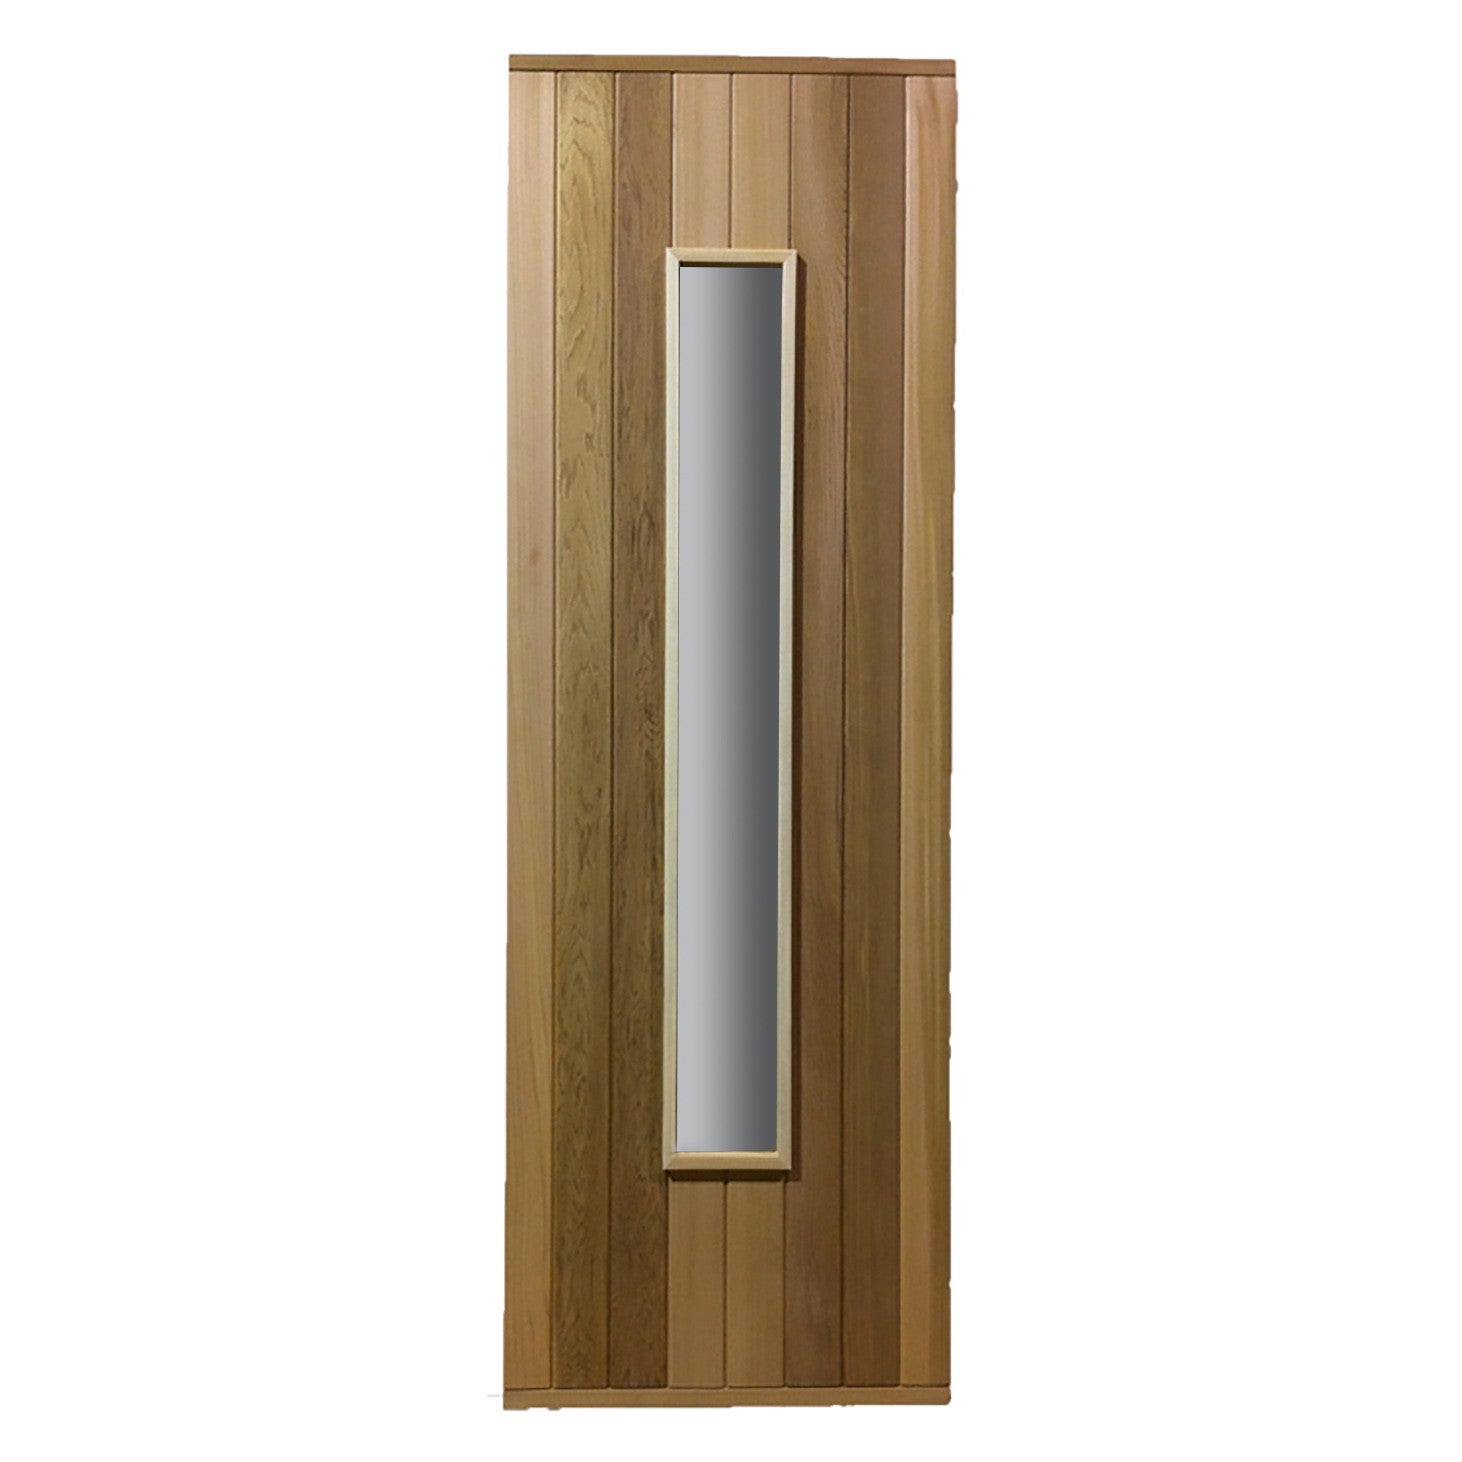 Cedar Door With a Long and Slim Window